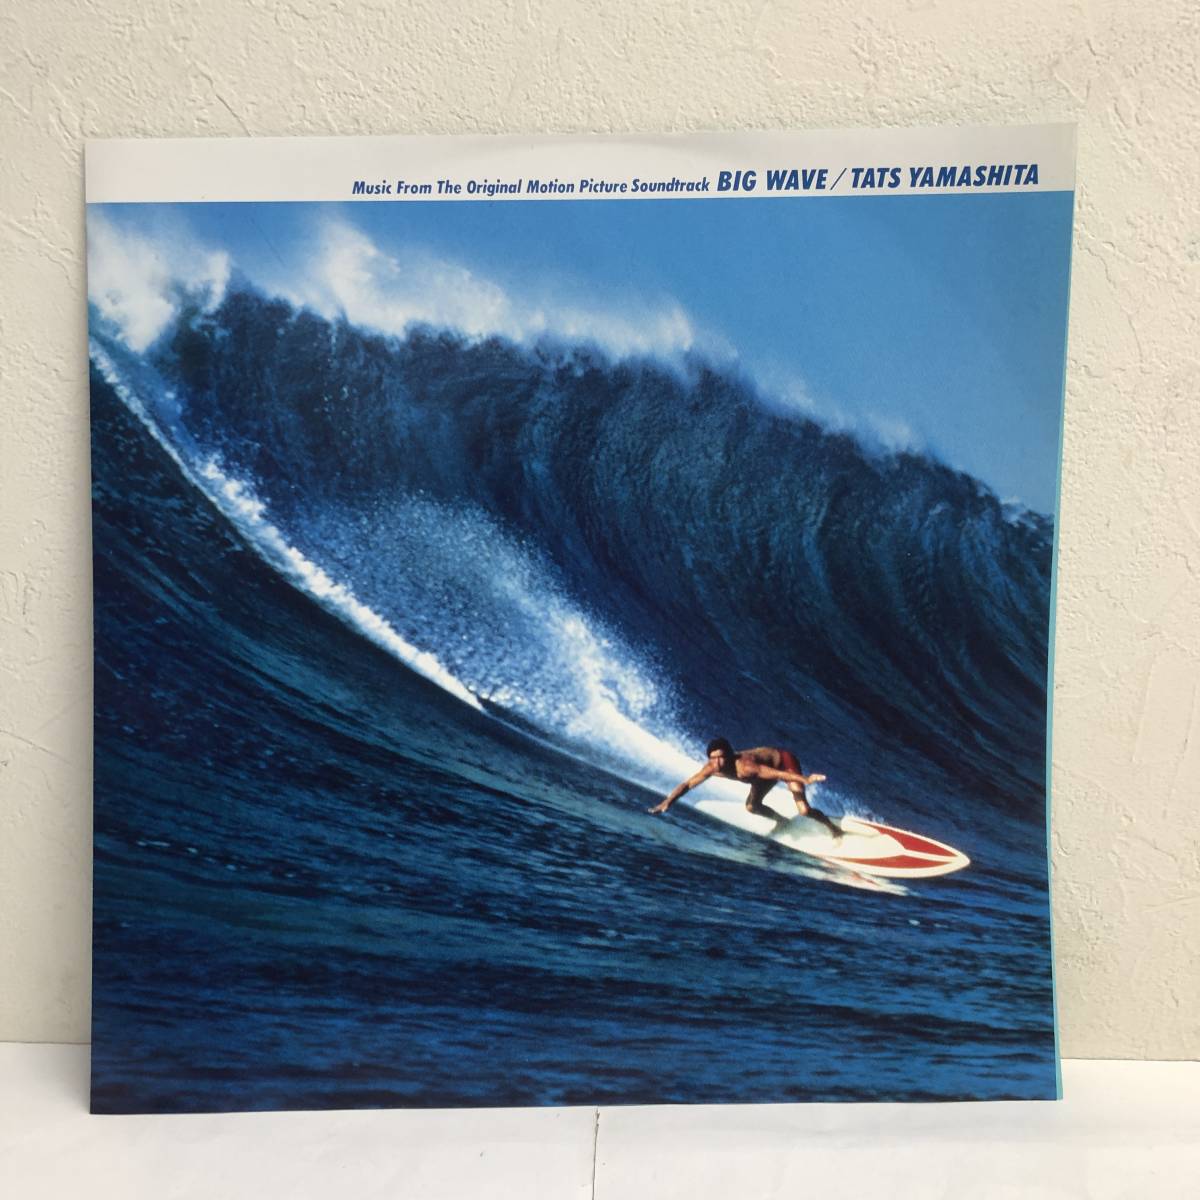 [中古] LPレコード「山下達郎：Big Wave」 33 1/3rpm MOONレコード 映画サントラ 邦楽 音楽 レトロ_画像7